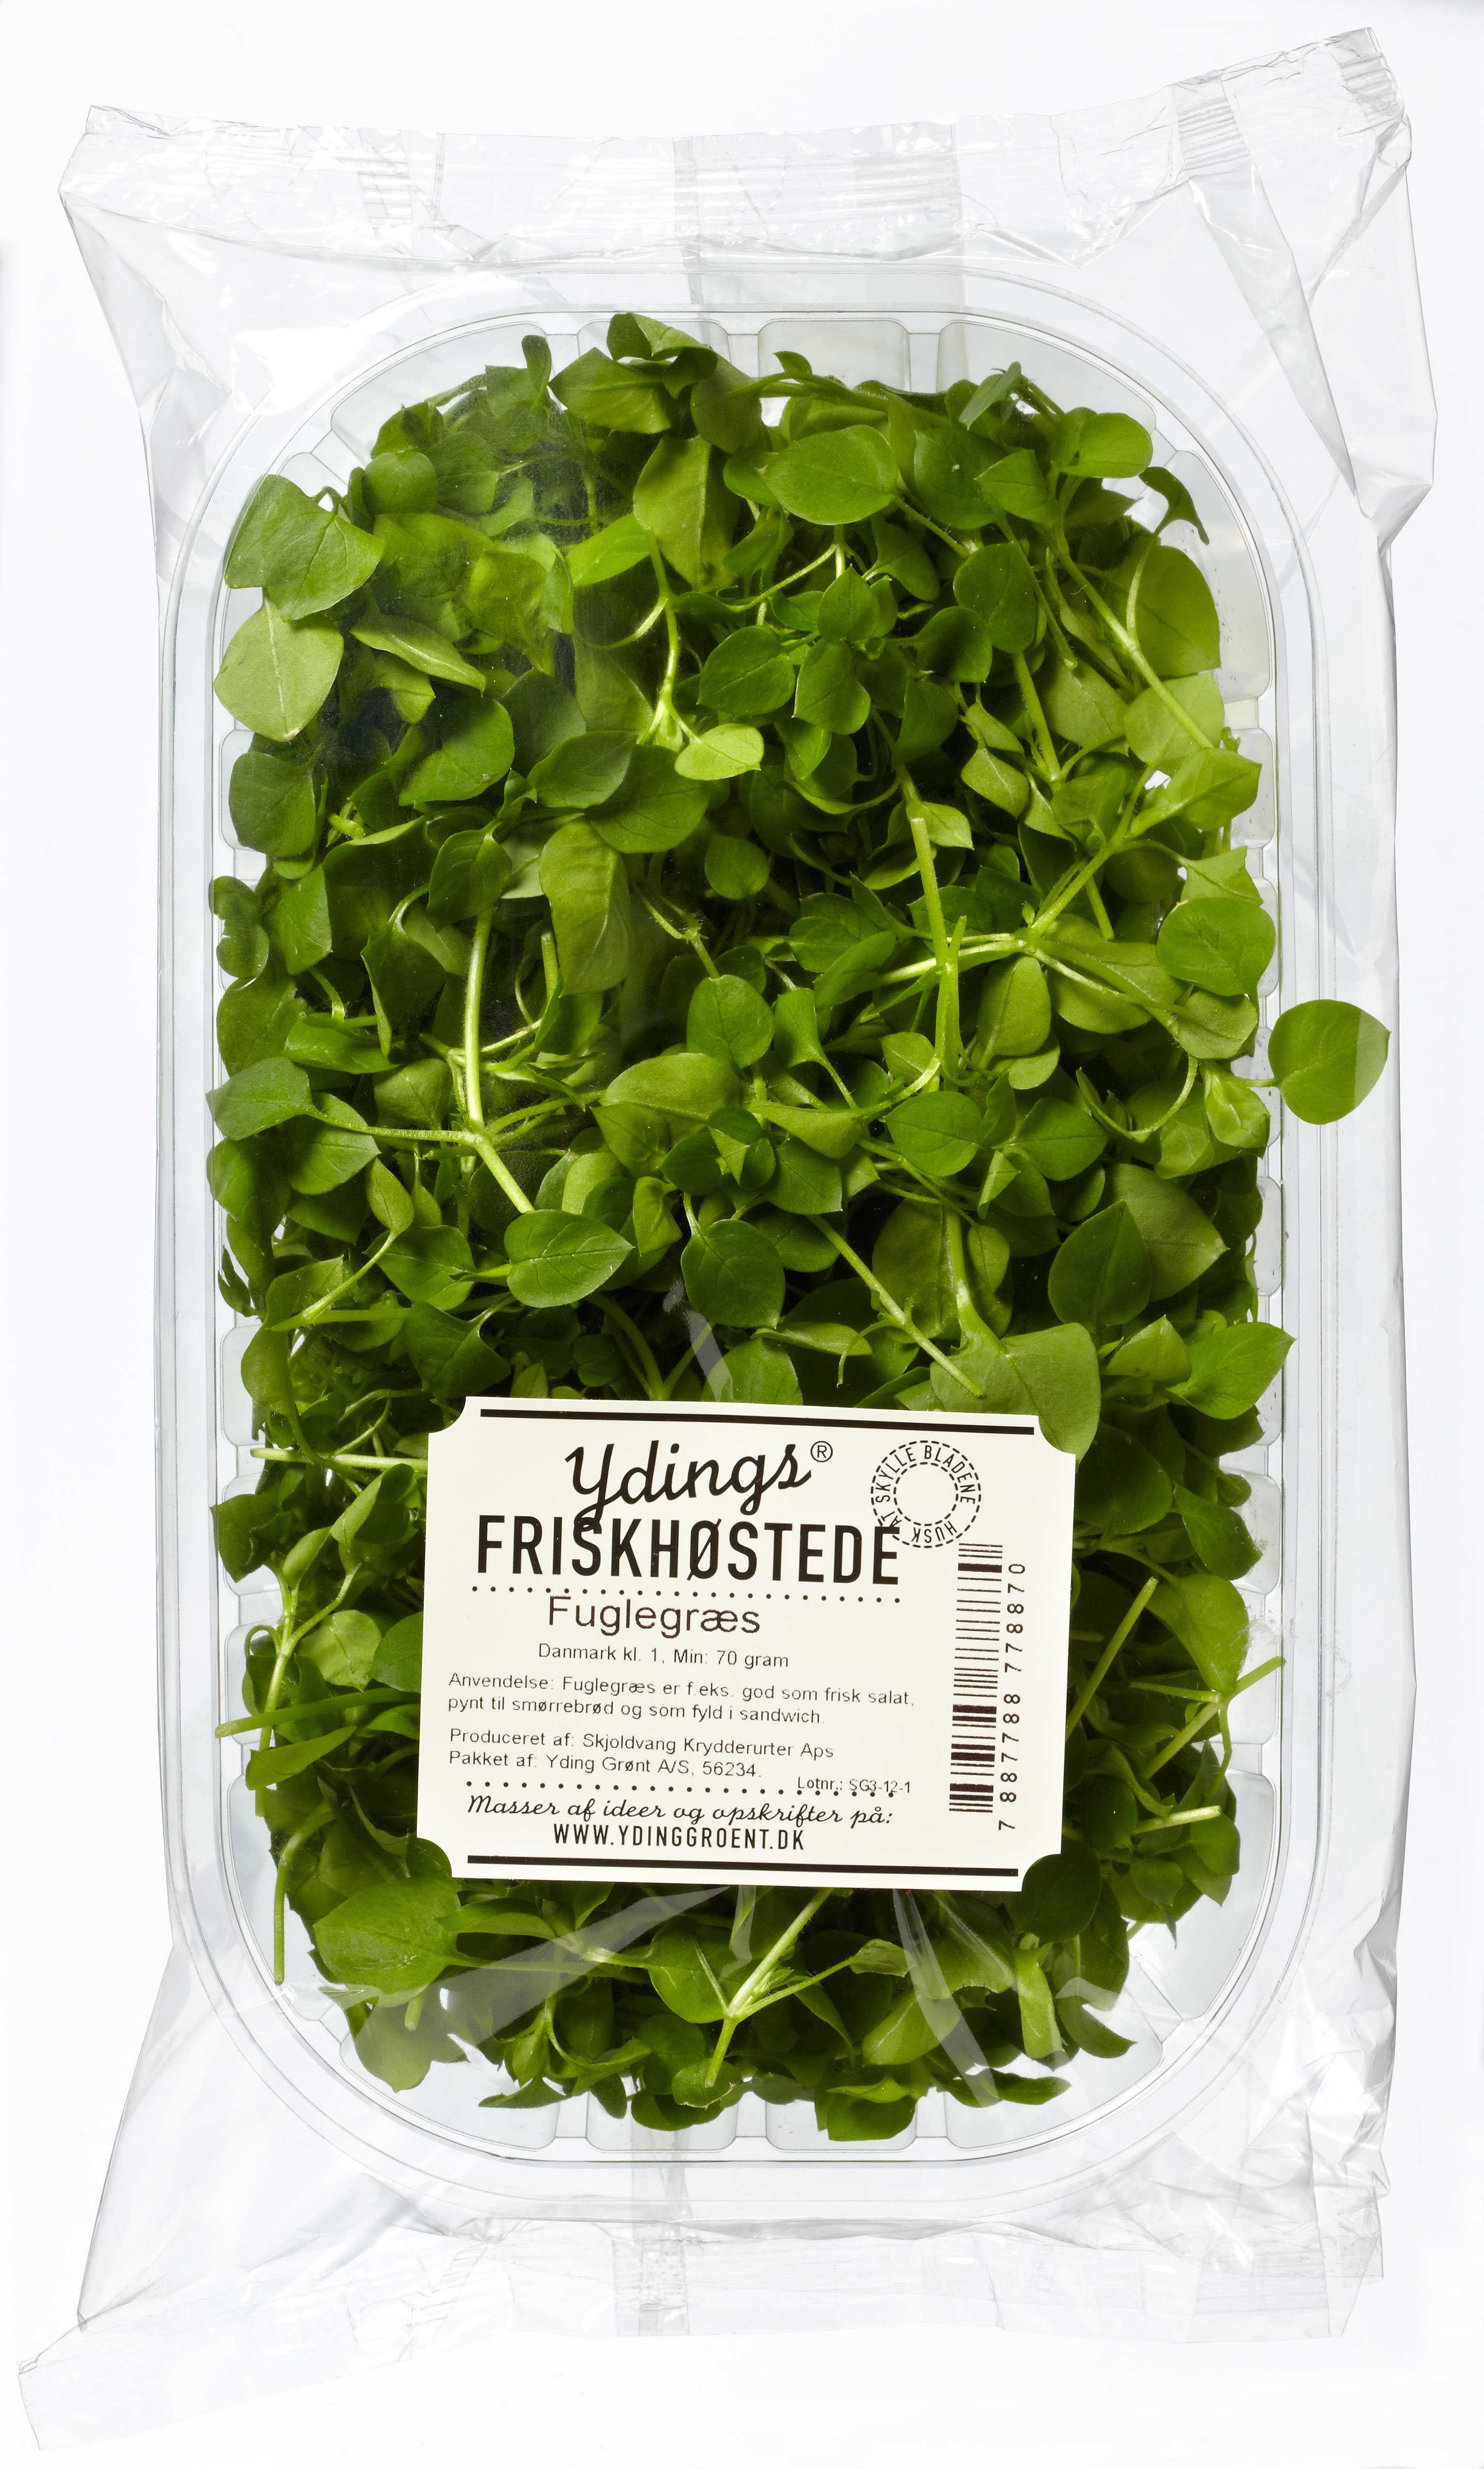 Ydings Fresh Produce Packaging Design – Yding Grønt